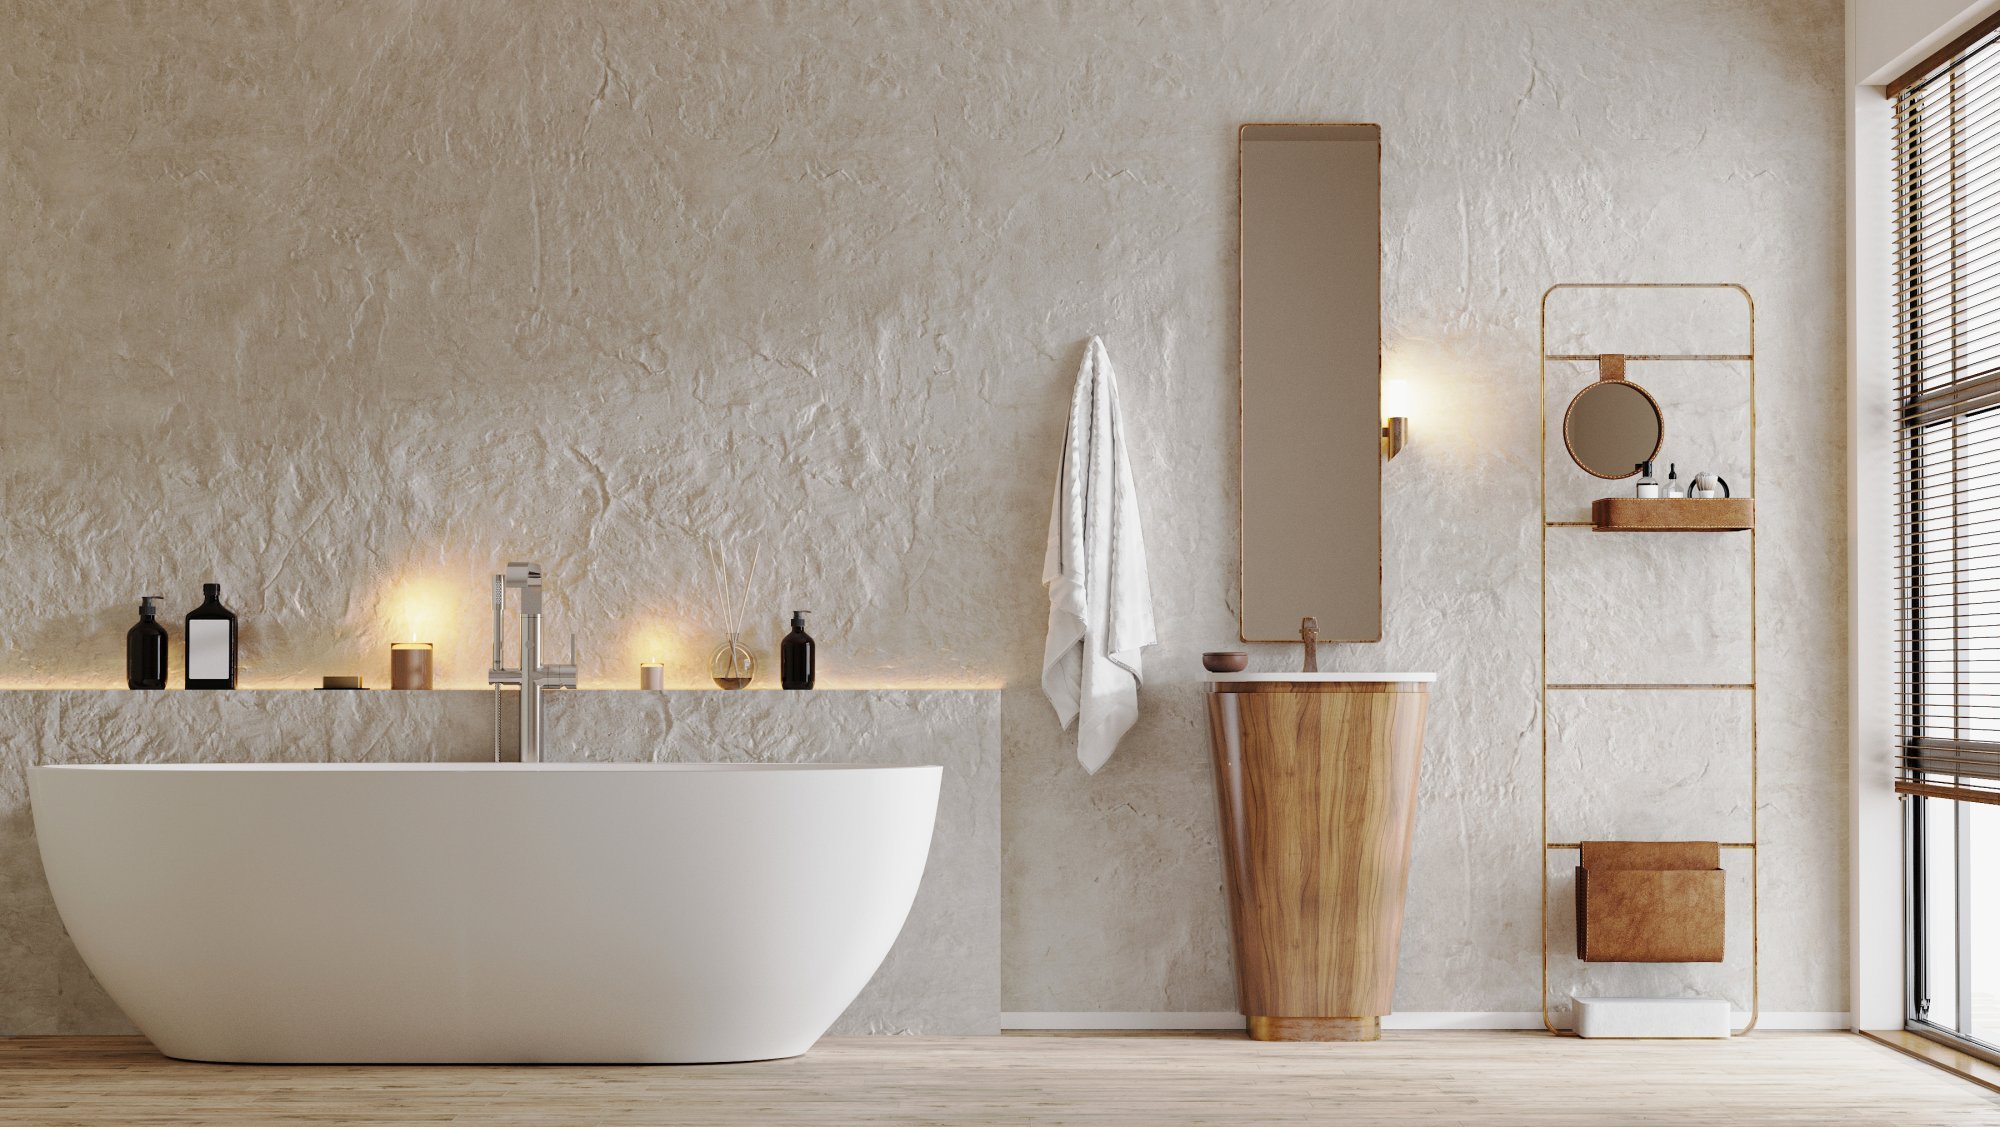 modern-bathroom-interior-with-tub-wooden-stand-sink-mirror-bath-accessories-3d-rendering.jpg